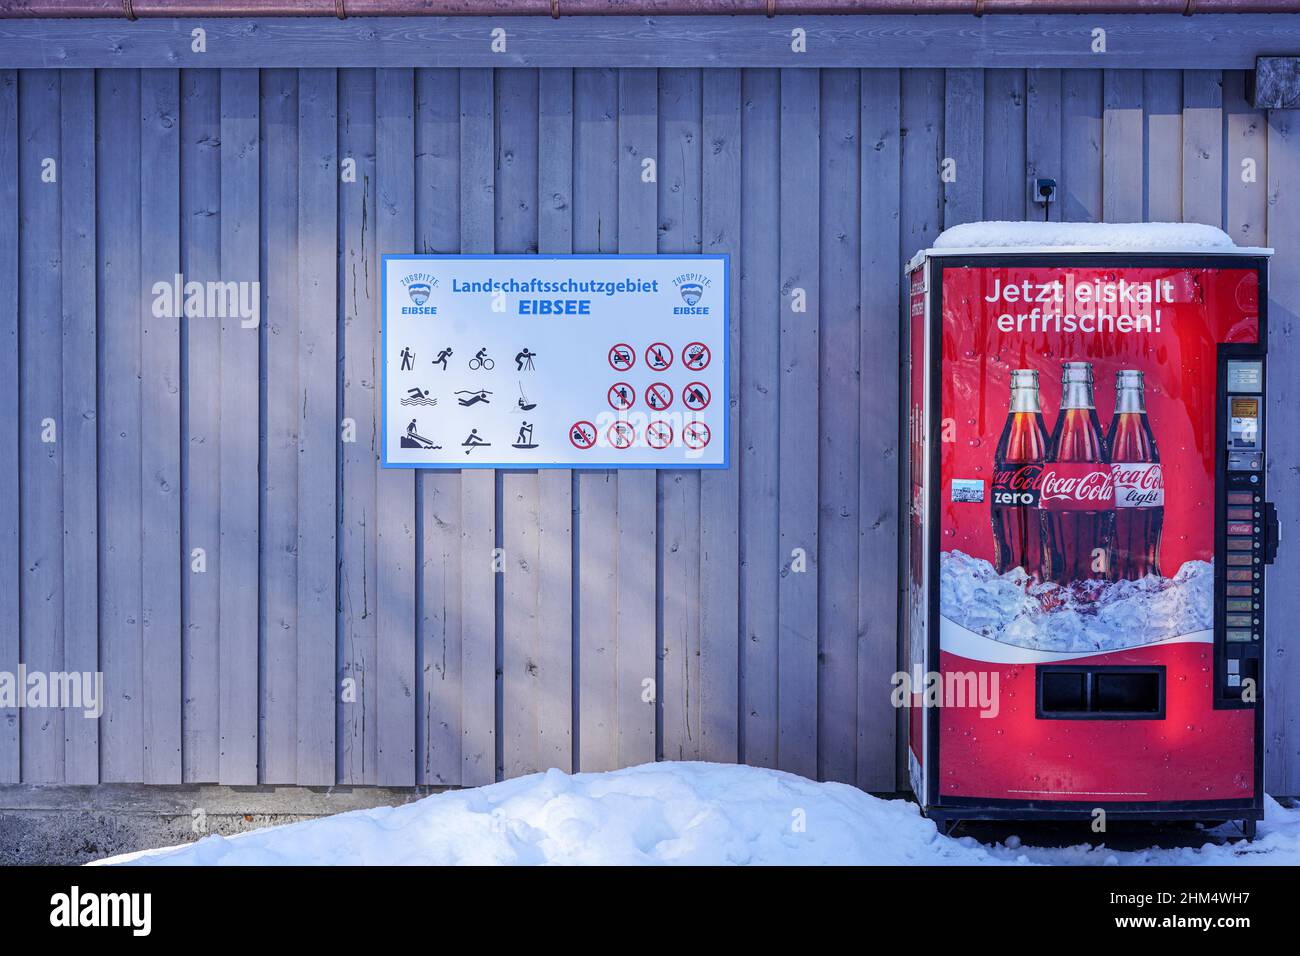 Erfrischen Sie sich jetzt eiskalt, der Werbeslogan auf einem Coca Cola-Automaten am Eibsee, Zugspitze. Schnee liegt vor dem Automaten. Stockfoto